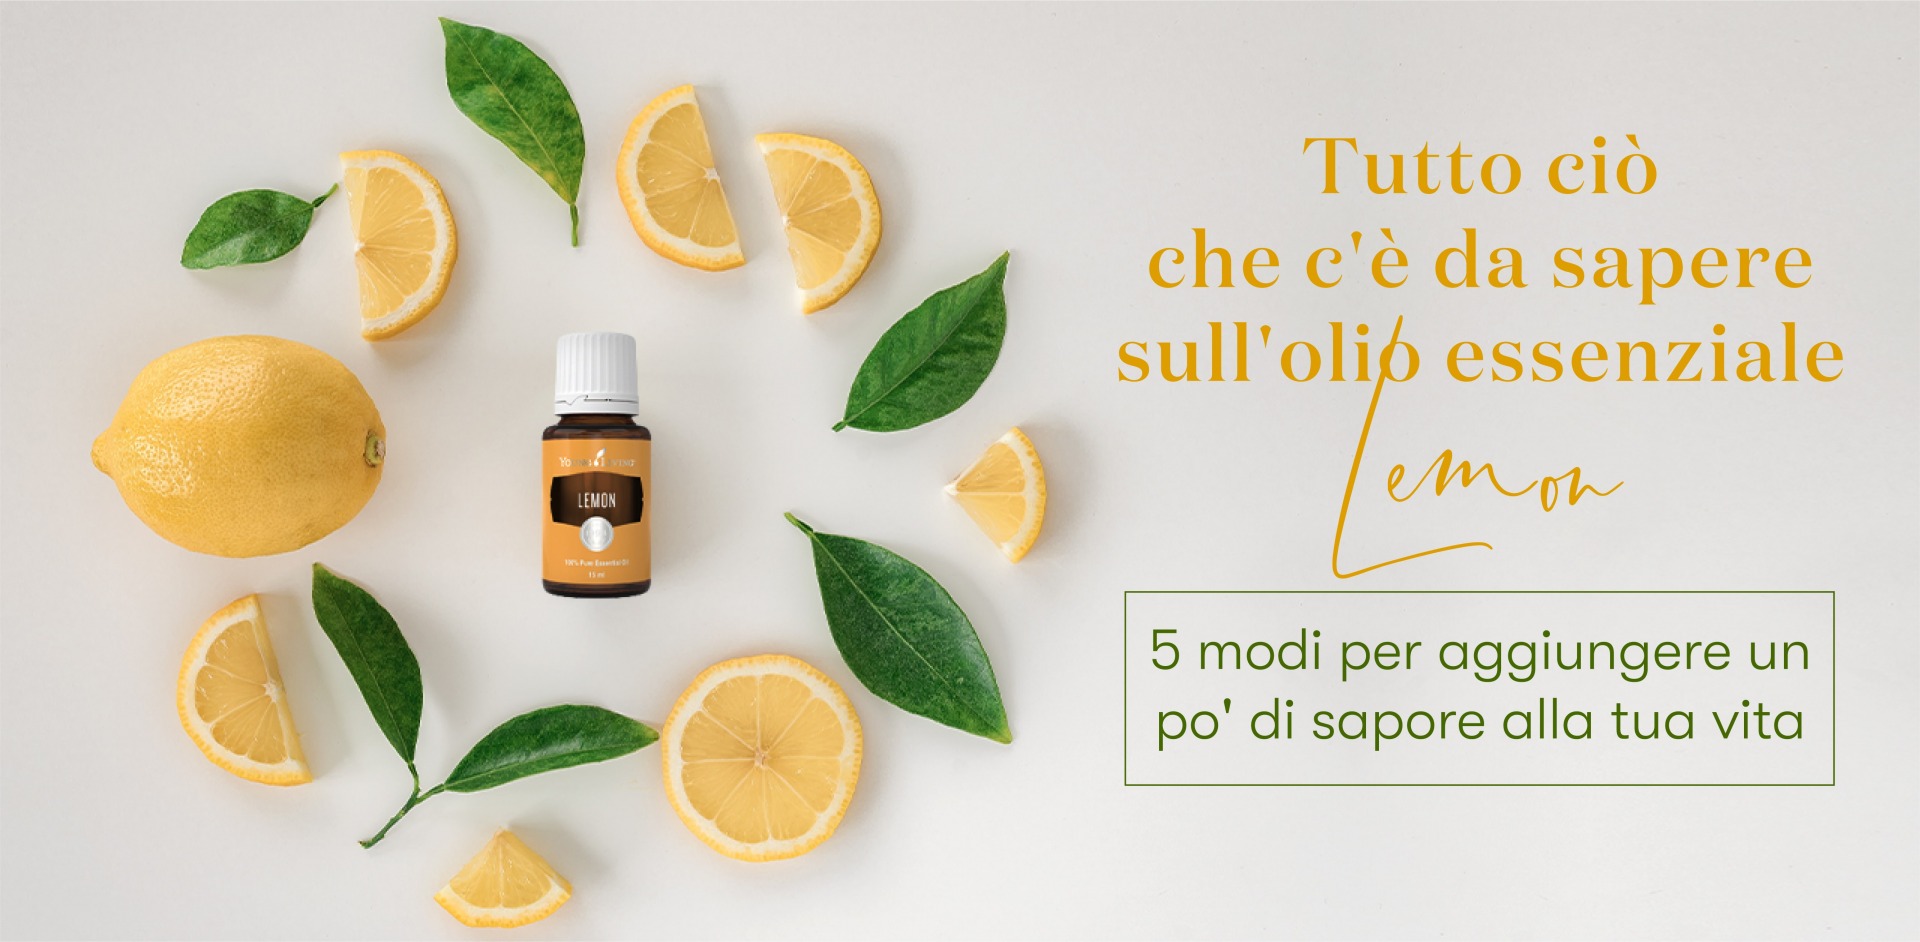 Usi e benefici olio essenziale Lemon  5 modi e benefici per utilizzare l'olio  essenziale di limone - Blog di Young Living